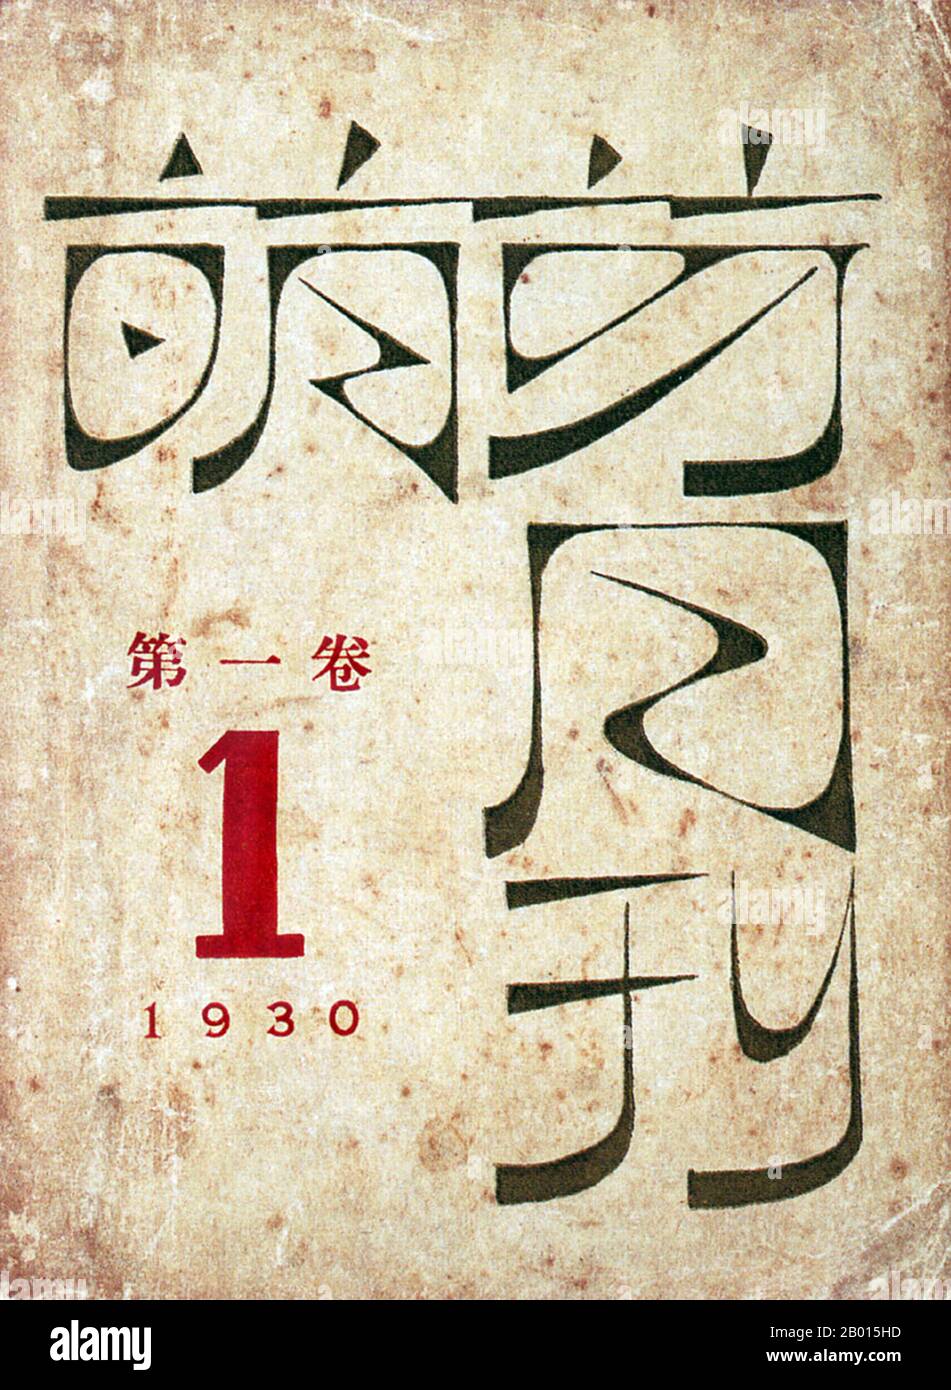 China: Literarische Revolution - Cover-Design für Mengya Yuekan ('Sprouts'), 1930. Cover Design für Sprossen (Mengya Yuekan). Herausgegeben von Lu Xun, Band 1, Nr. 1 (Januar 1930), herausgegeben von der Guanghua Book Company, Shanghai 1930. Stockfoto